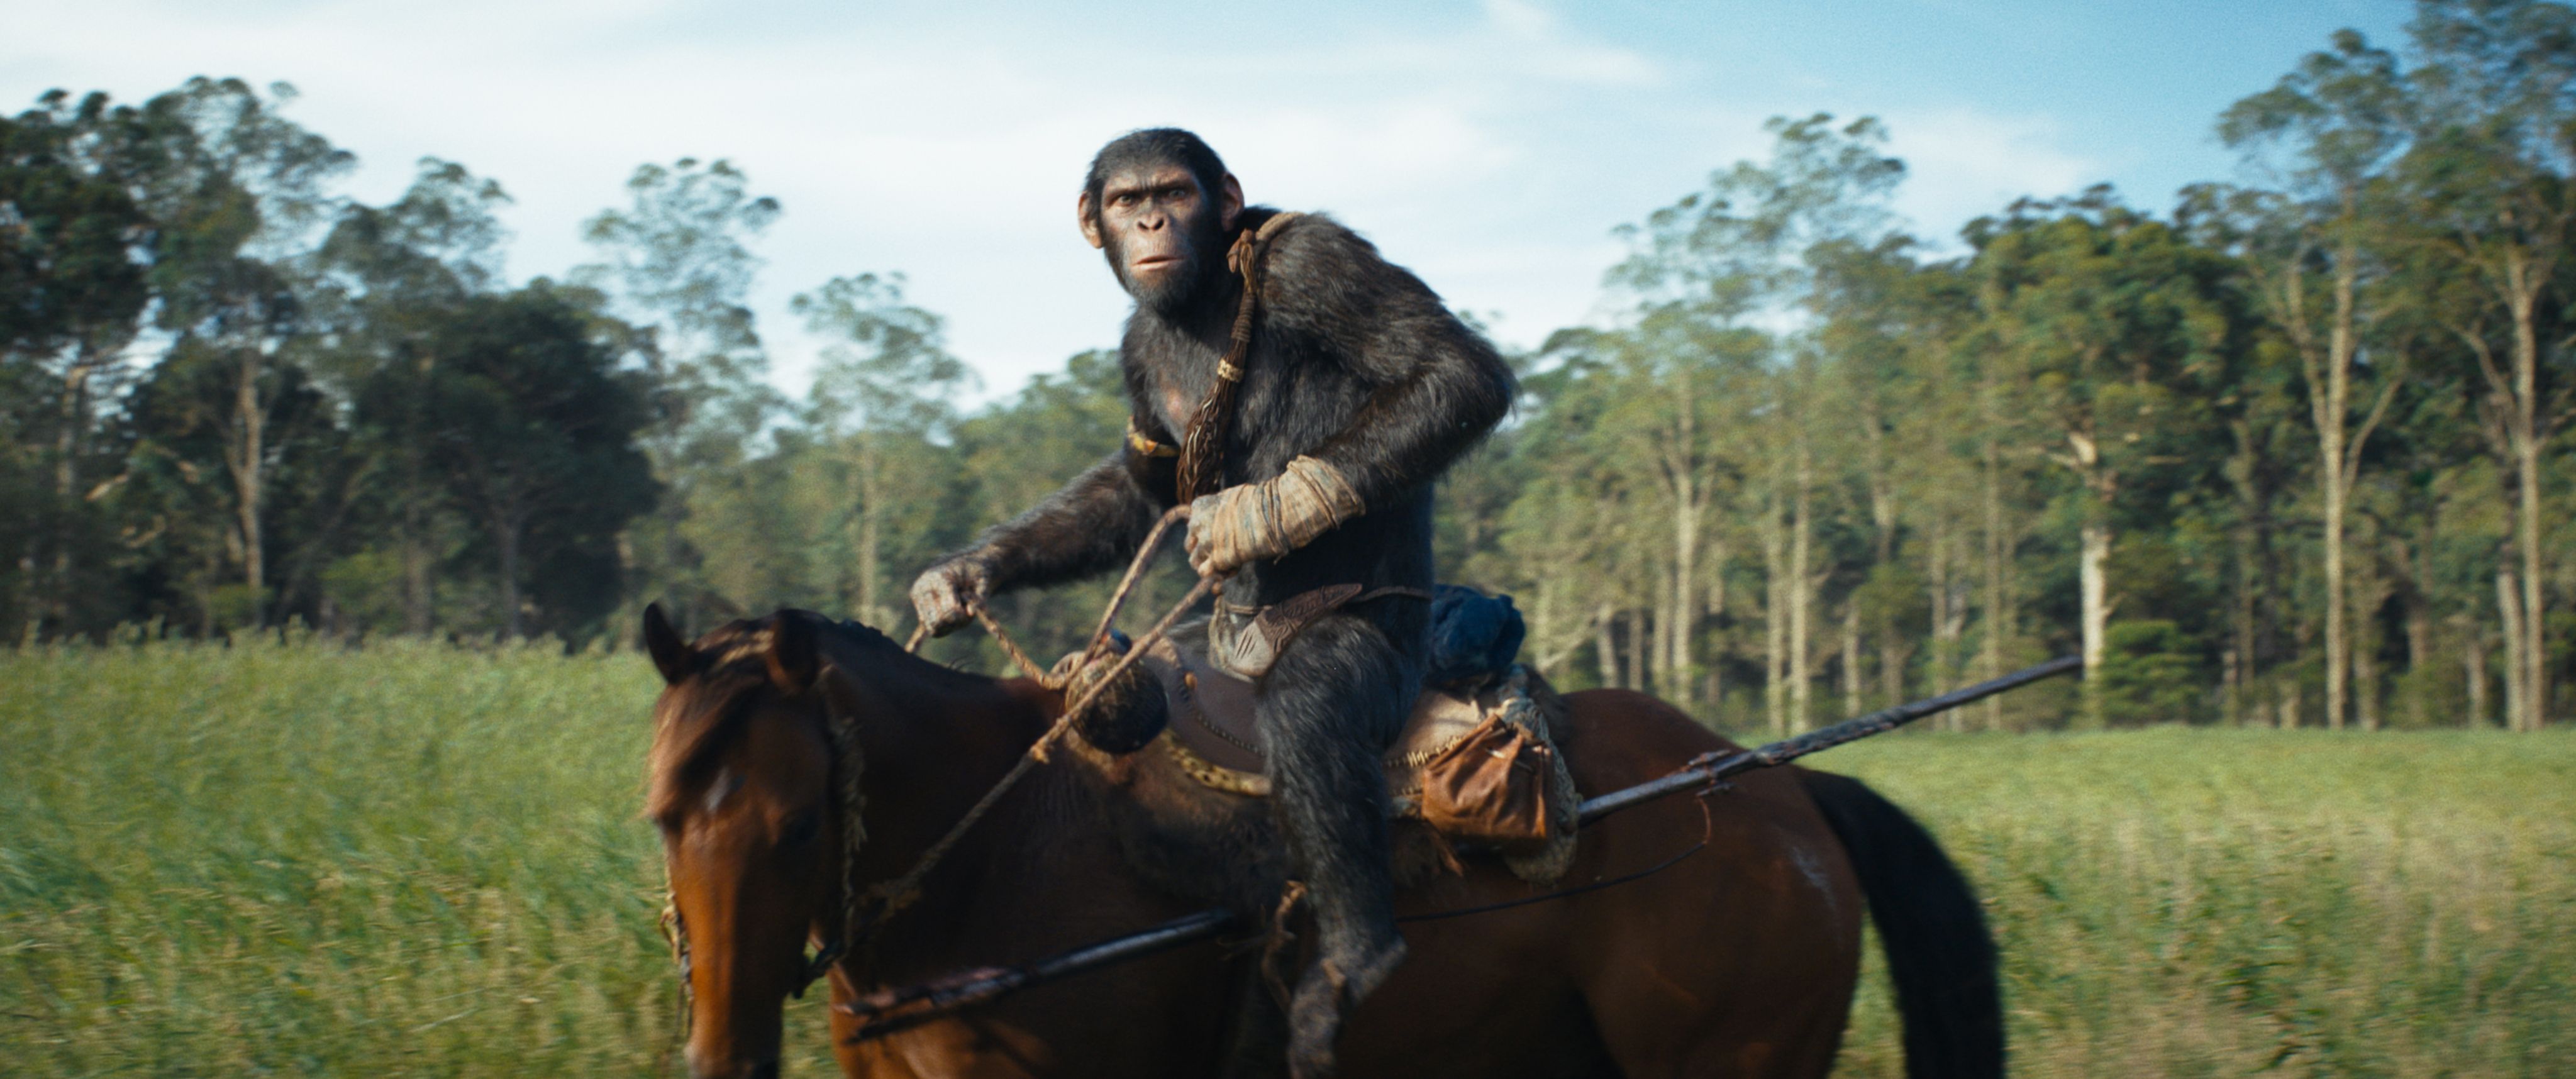 Фрейя Аллан говорит, что коллеги по фильму «Королевство планеты обезьян» на съемочной площадке выглядели как смурфики